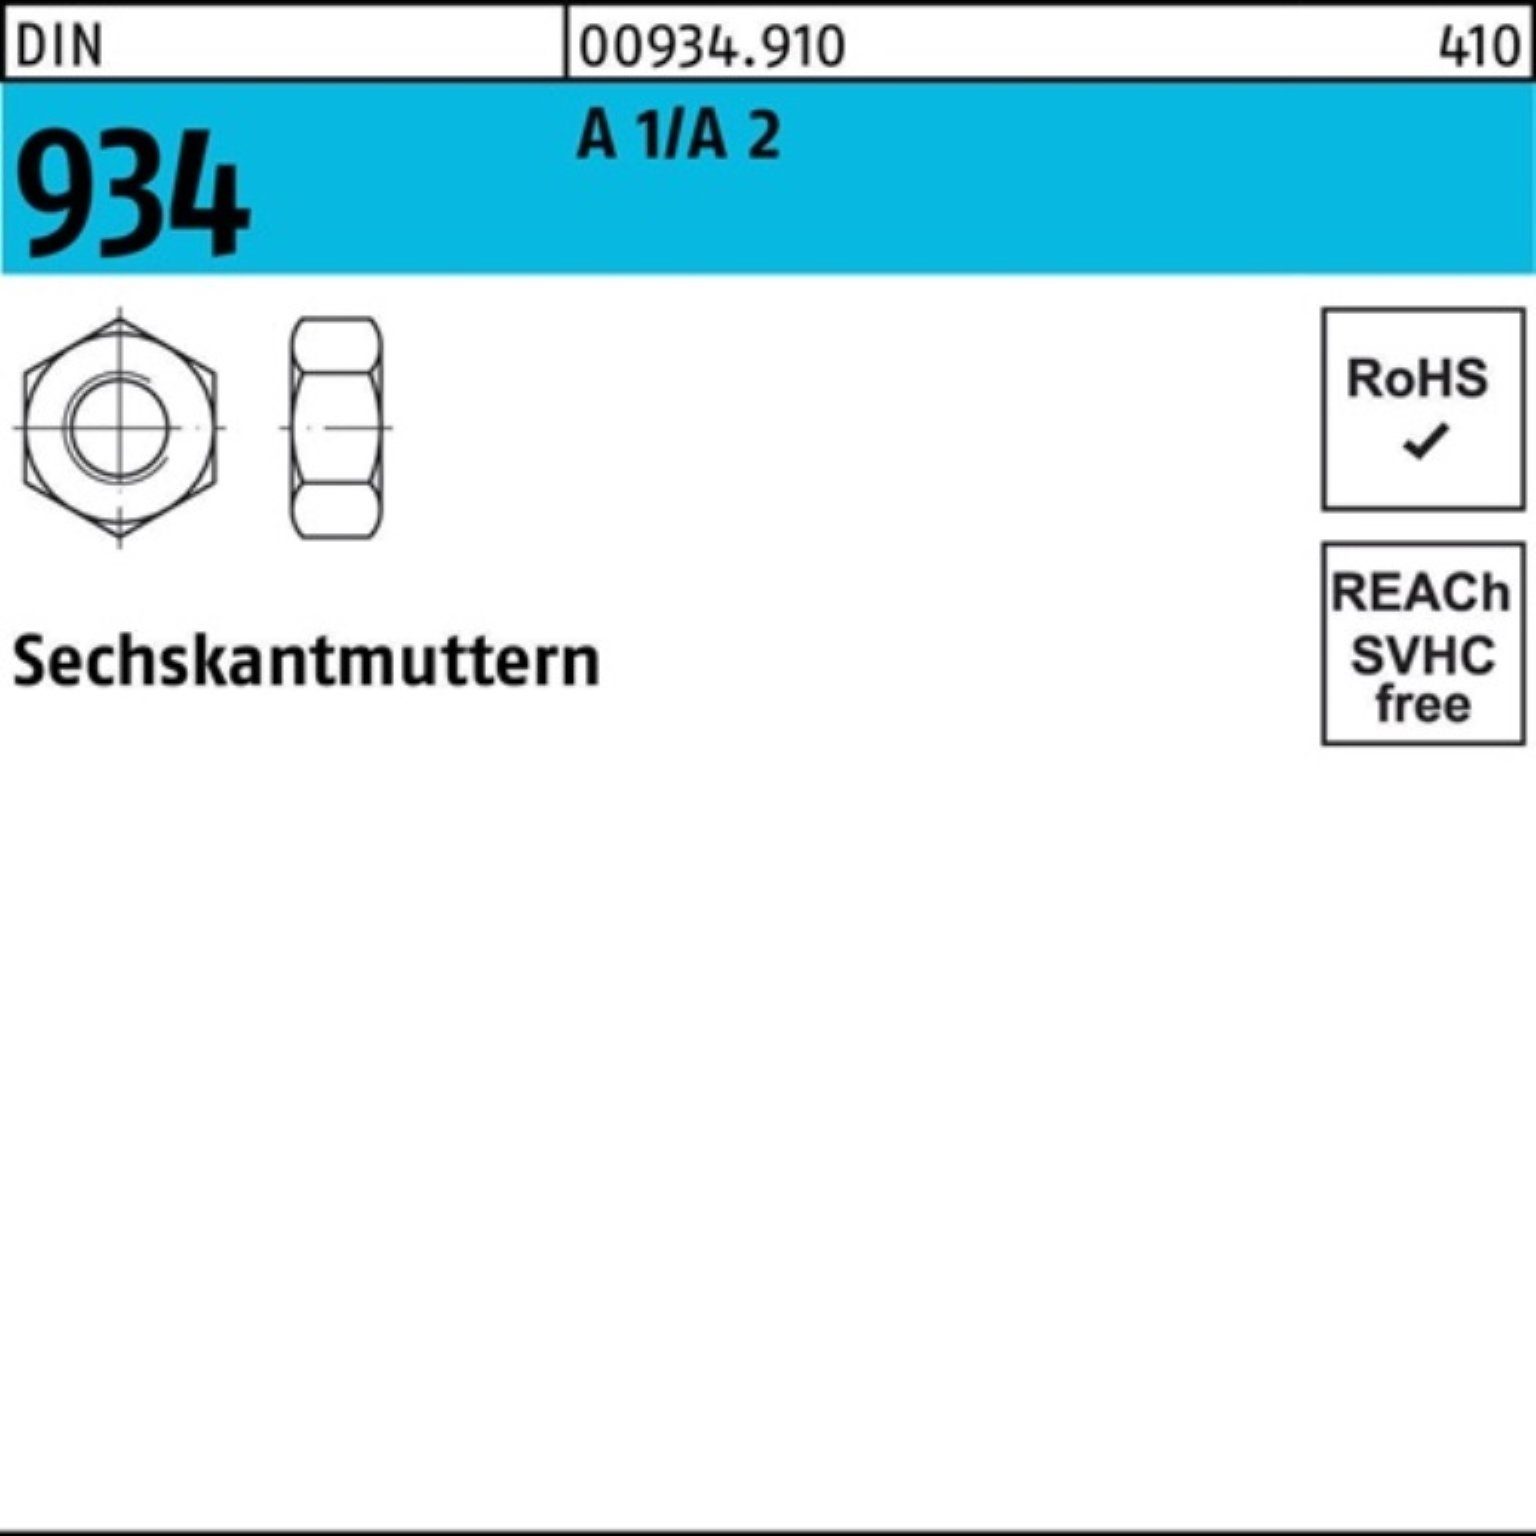 Reyher Muttern 500er Pack Sechskantmutter DIN 934 M1,6 A1/A2 500 Stück DIN 934 A 1/A